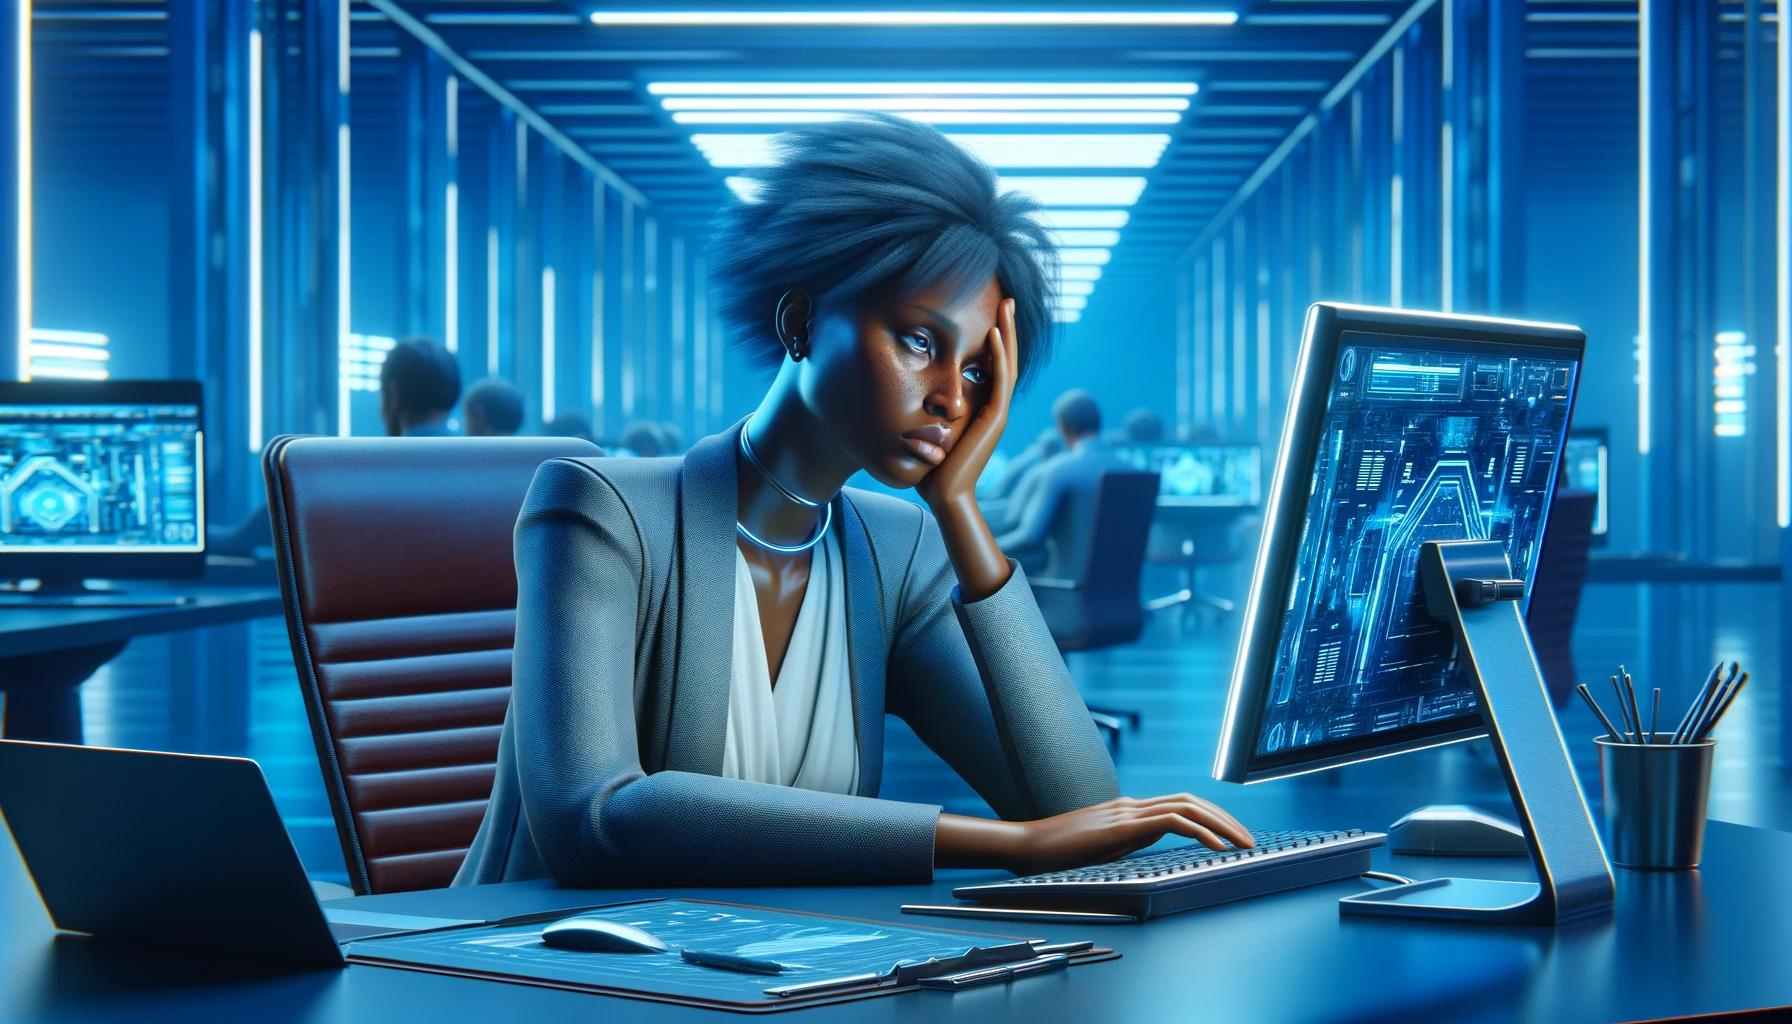 Uma mulher de ascendência africana sentada à frente de um computador em um escritório futurista, exibindo sinais de esgotamento causado por burnout digital.